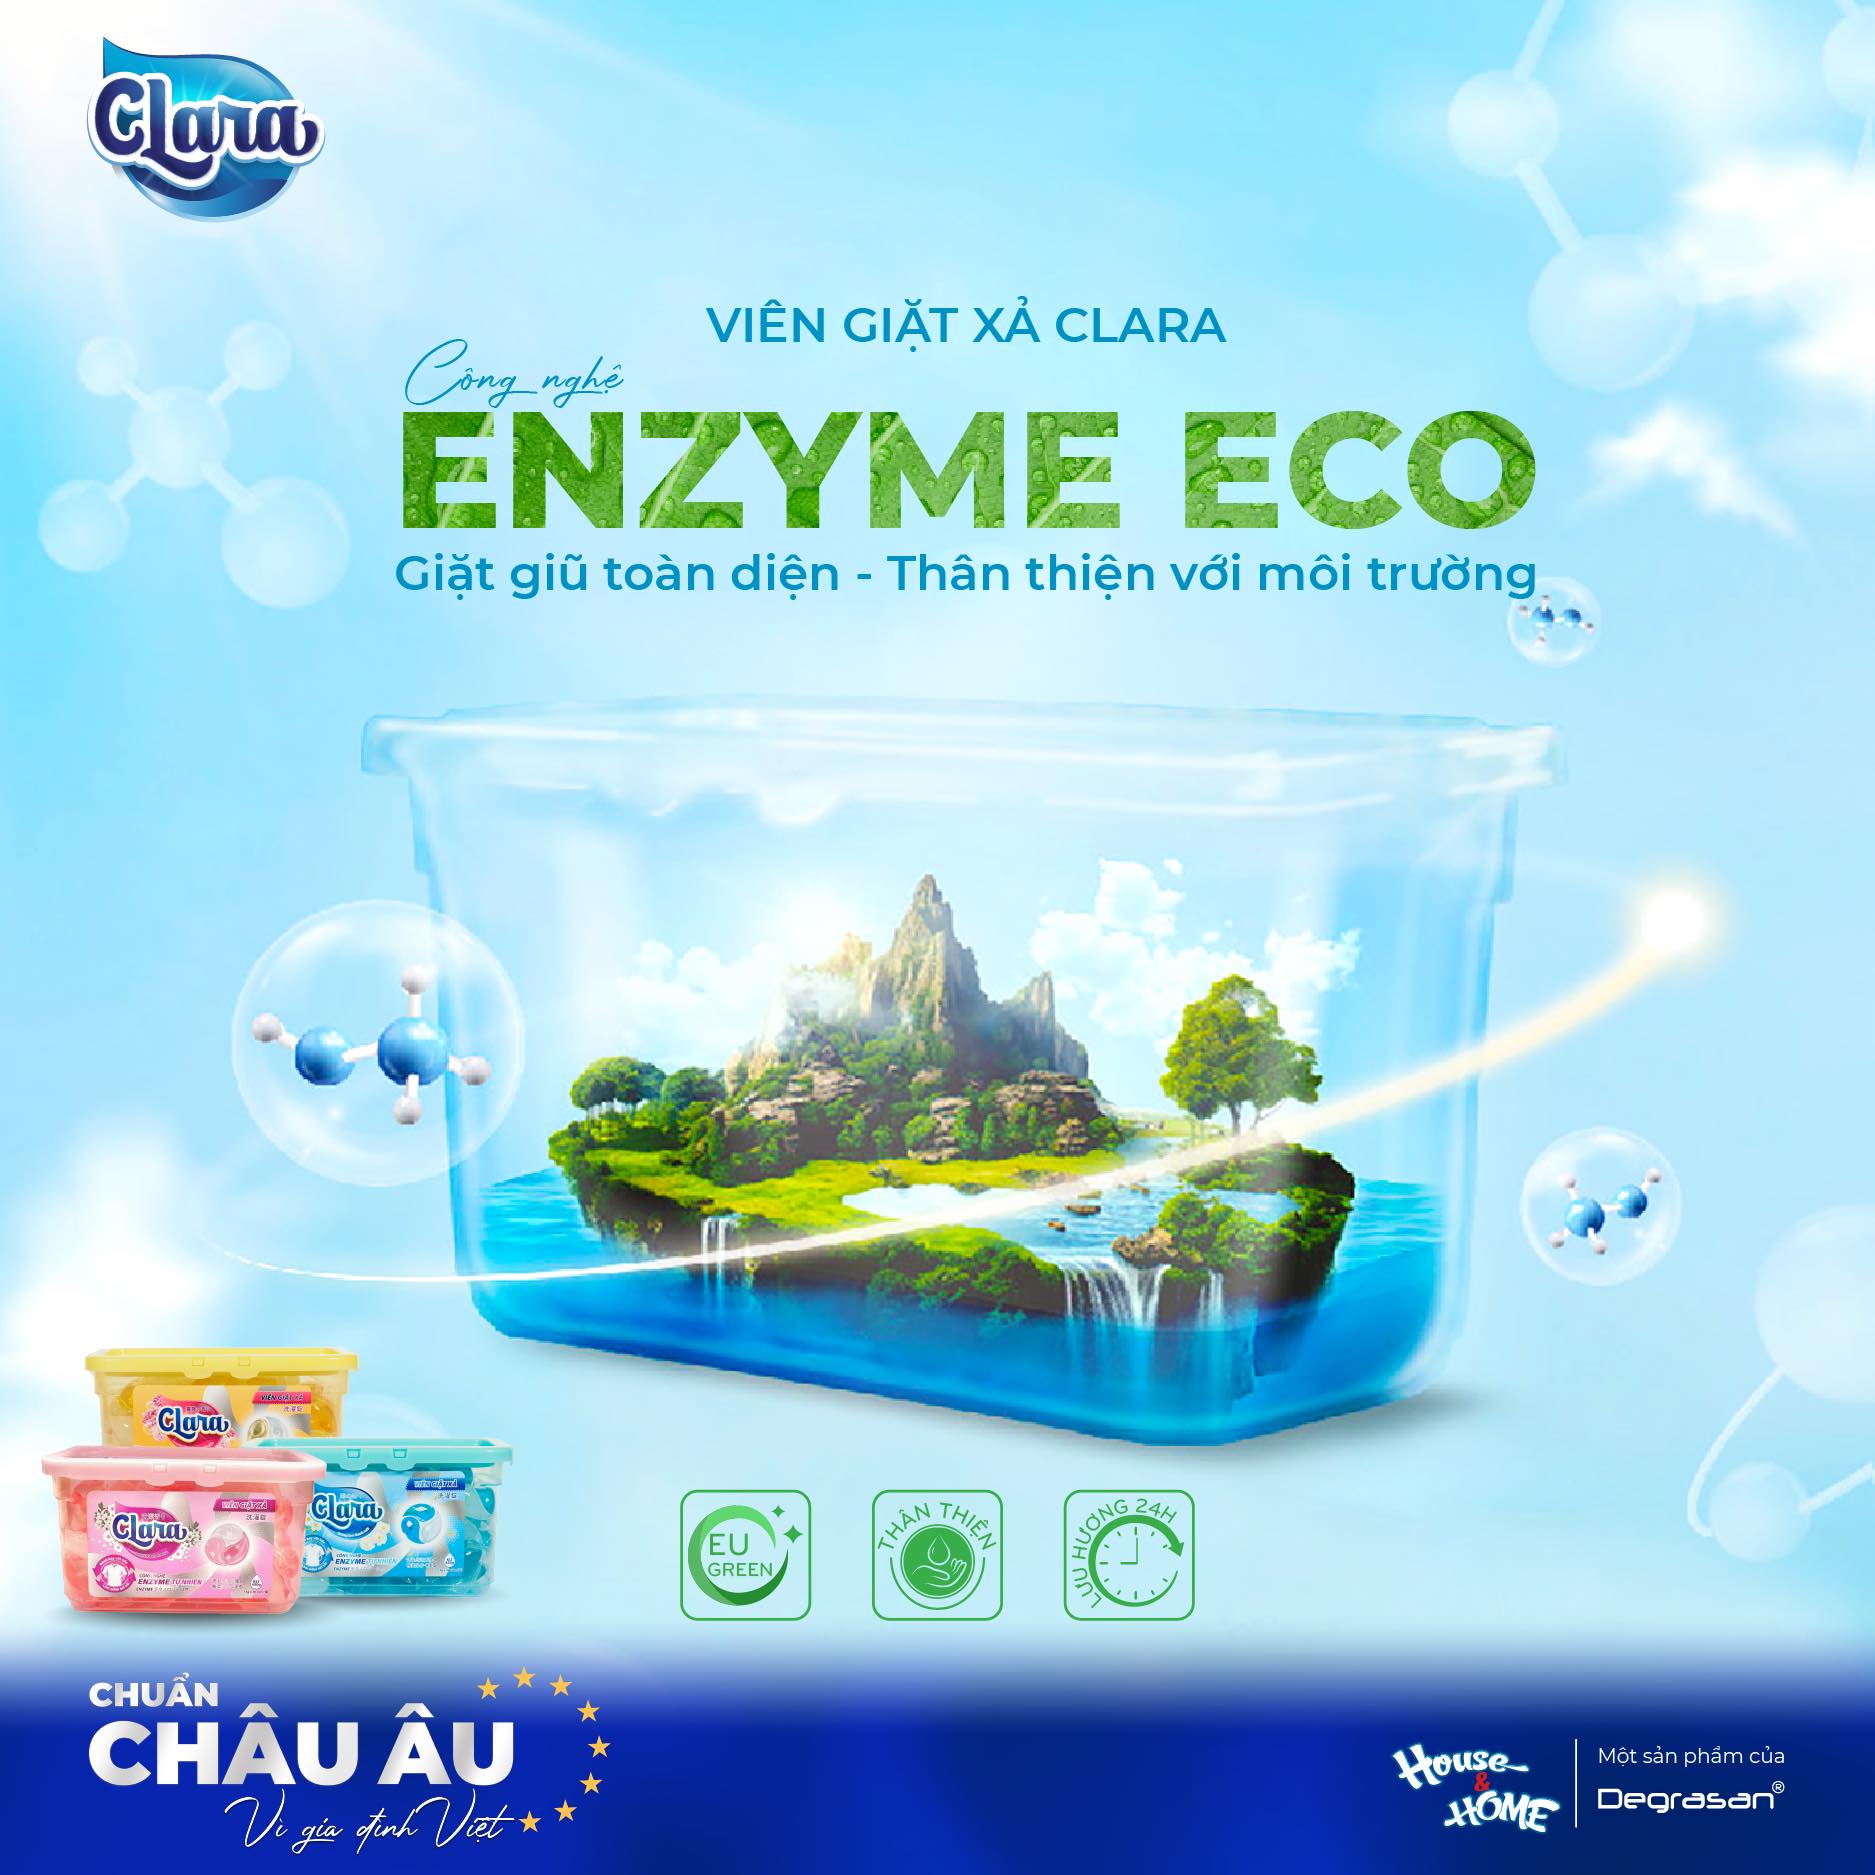 Công nghệ enzyme ECO giặt sạch hiệu quả